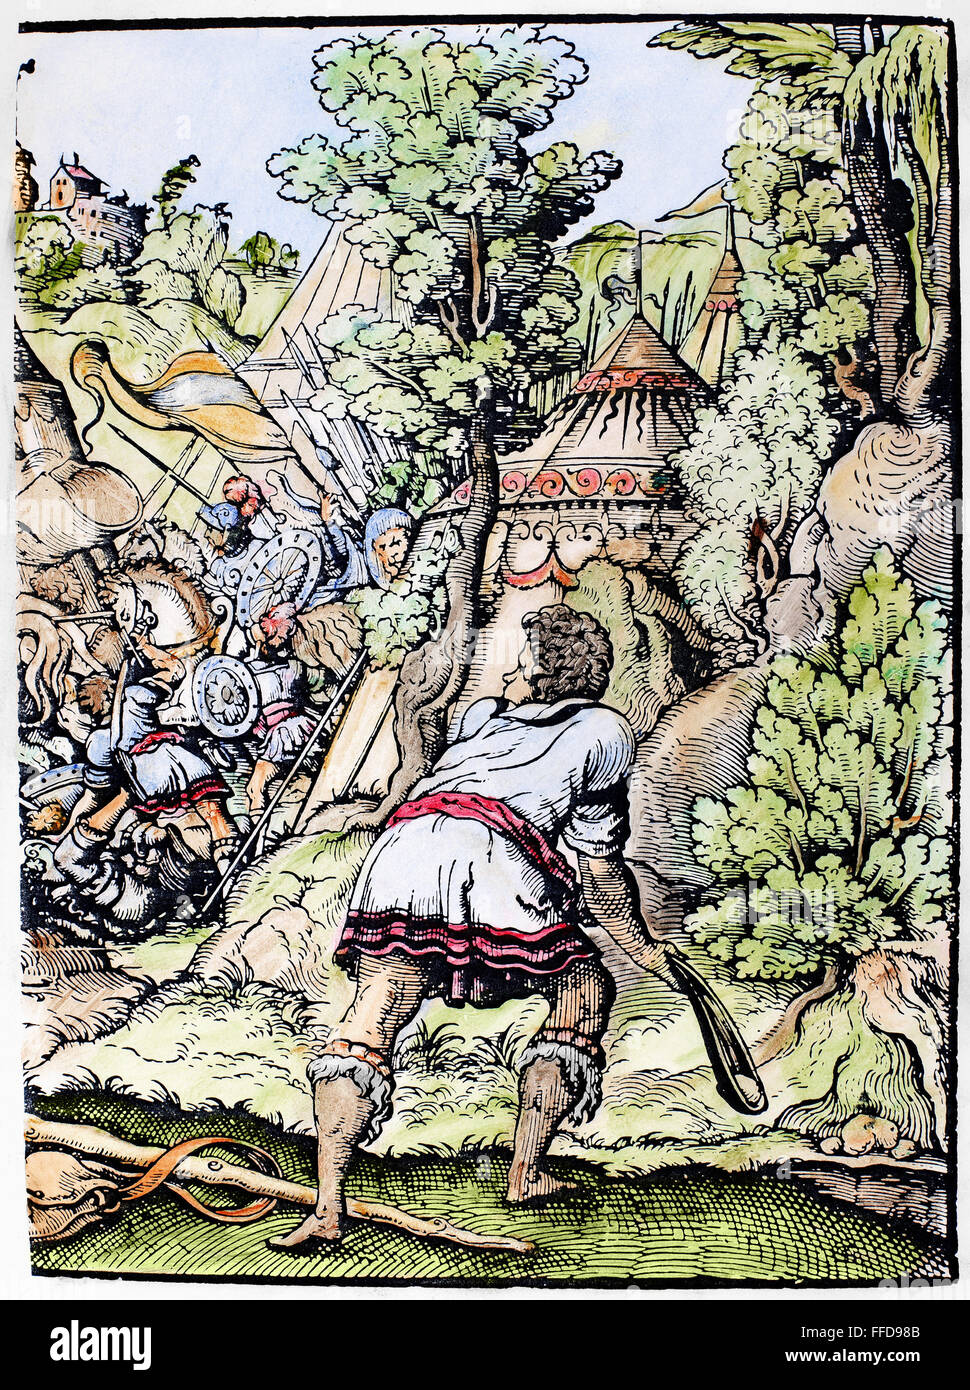 DAVID UND GOLIATH. / nDavid bereitet sich auf seinen Stein auf Goliat, der Philister Krieger zu schleudern (1 Samuel 17: 48-49). Holzschnitt, 16. Jahrhundert von Jost Amman. Stockfoto